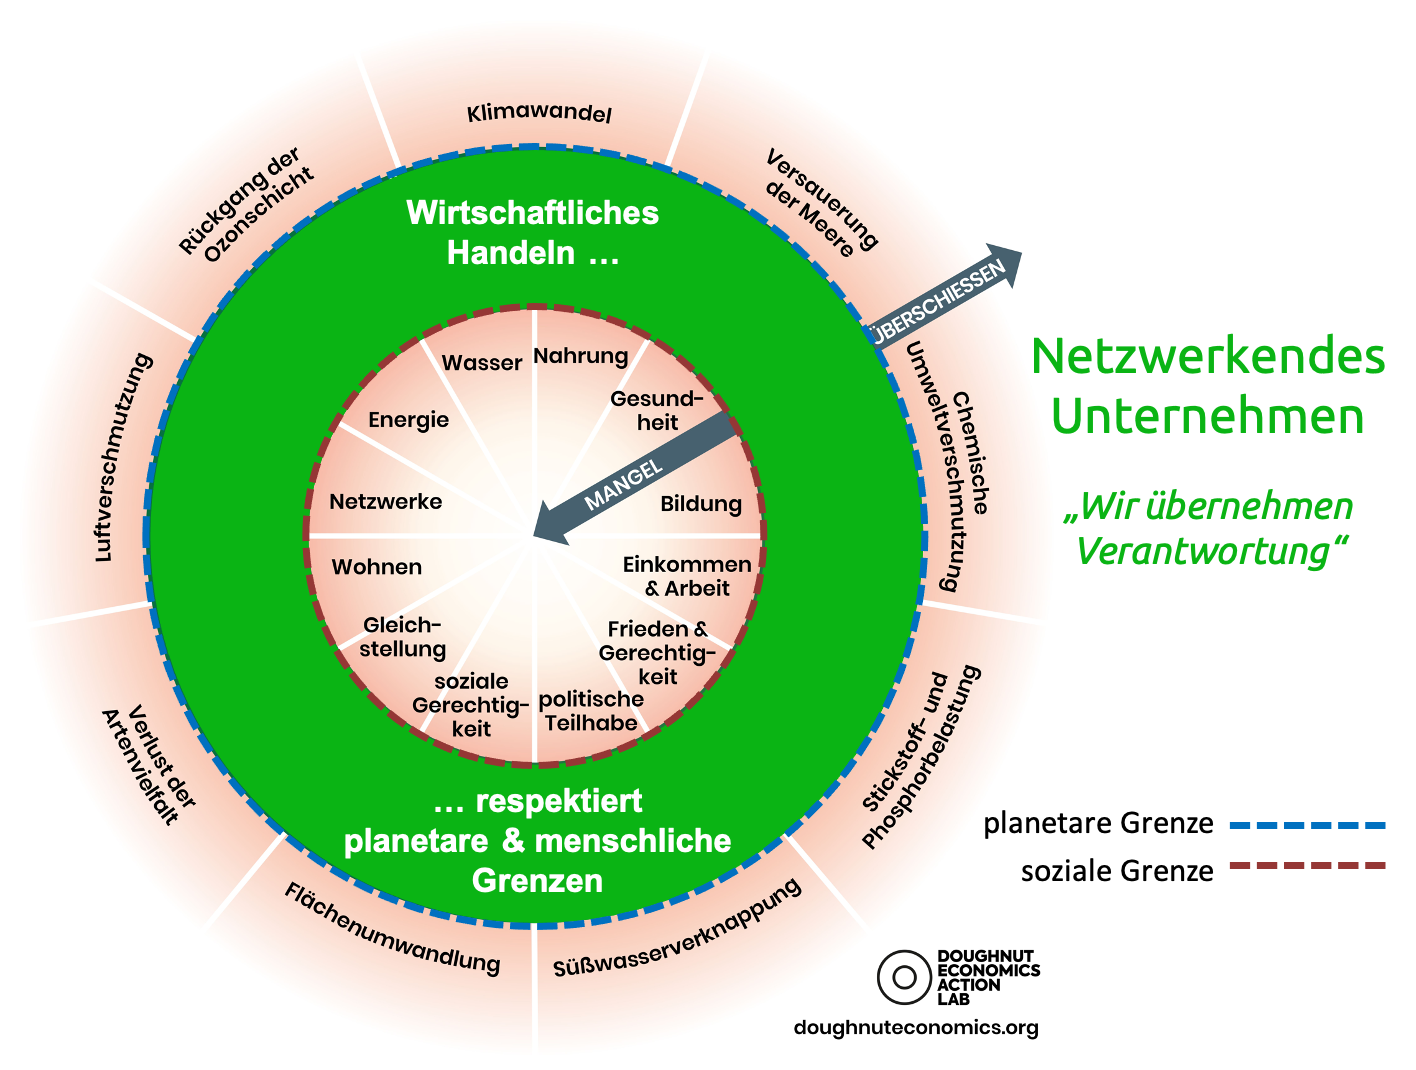 Donut-Ökonomie und Netzwerkendes Unternehmen nach dem INU-Modell für Integral-Nachhaltige Unternehmensentwicklung